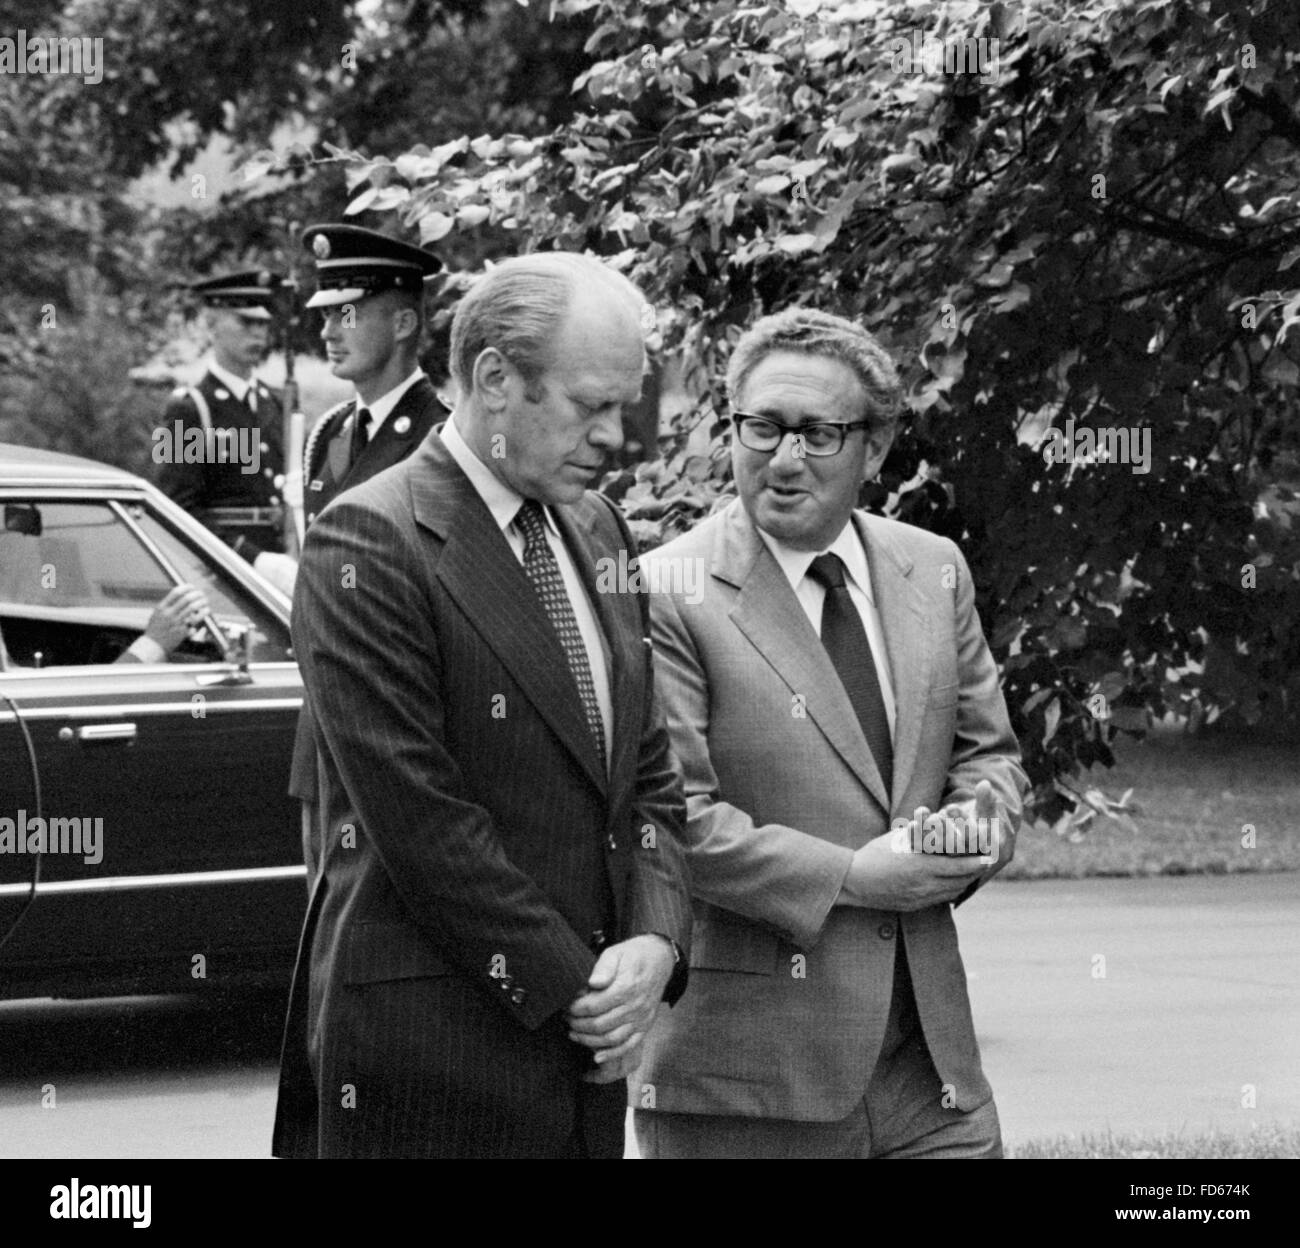 Gerald Ford und Henry Kissinger. Präsident Gerald Ford und Staatssekretär Dr. Henry Kissinger auf dem Gelände das Weiße Haus, Washington DC, August 1974 Stockfoto